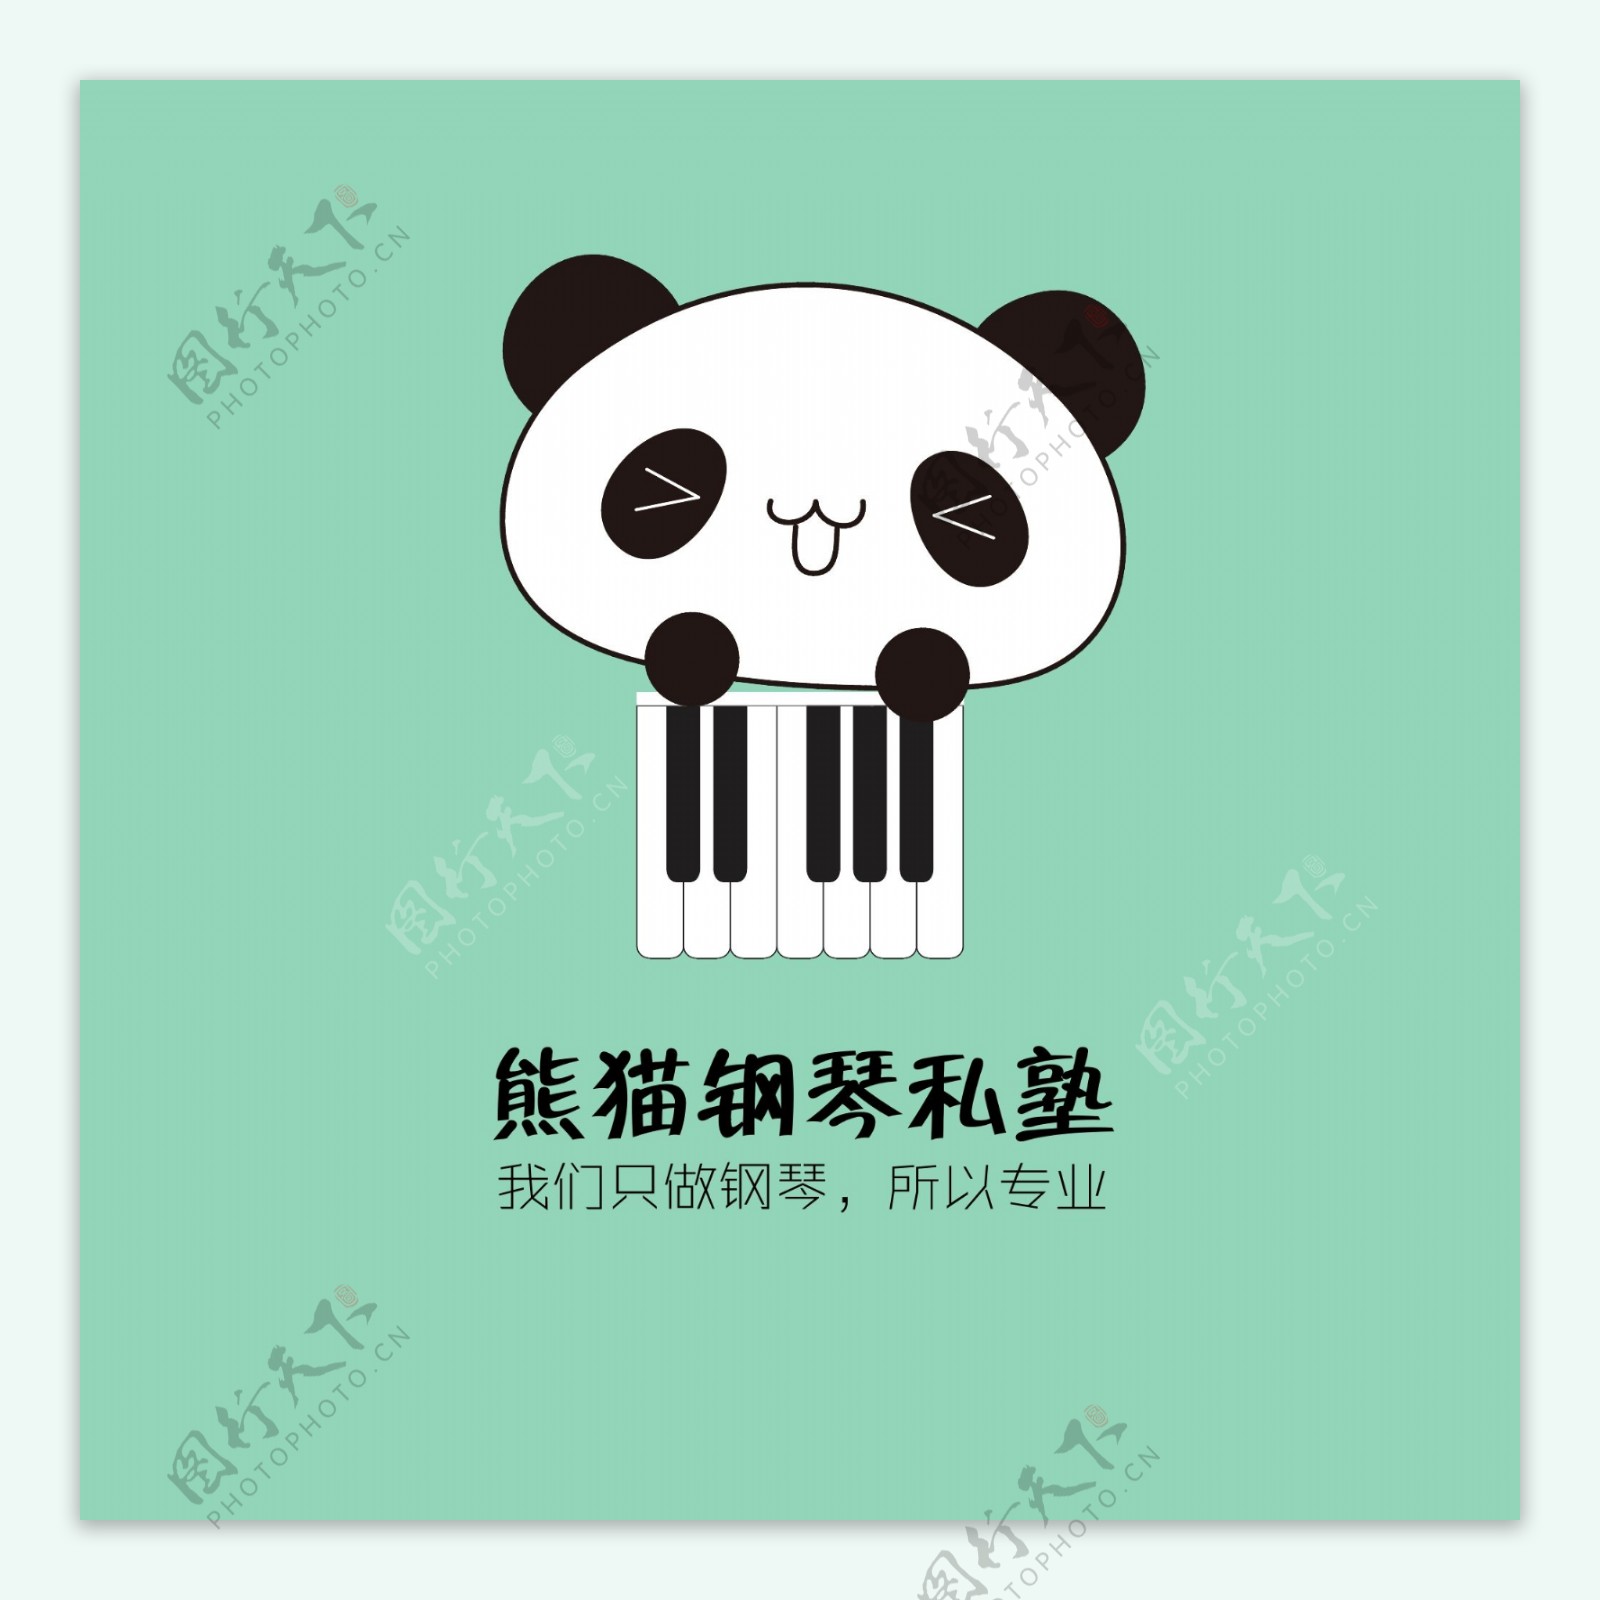 熊猫钢琴私塾logoai格式多色简约形象